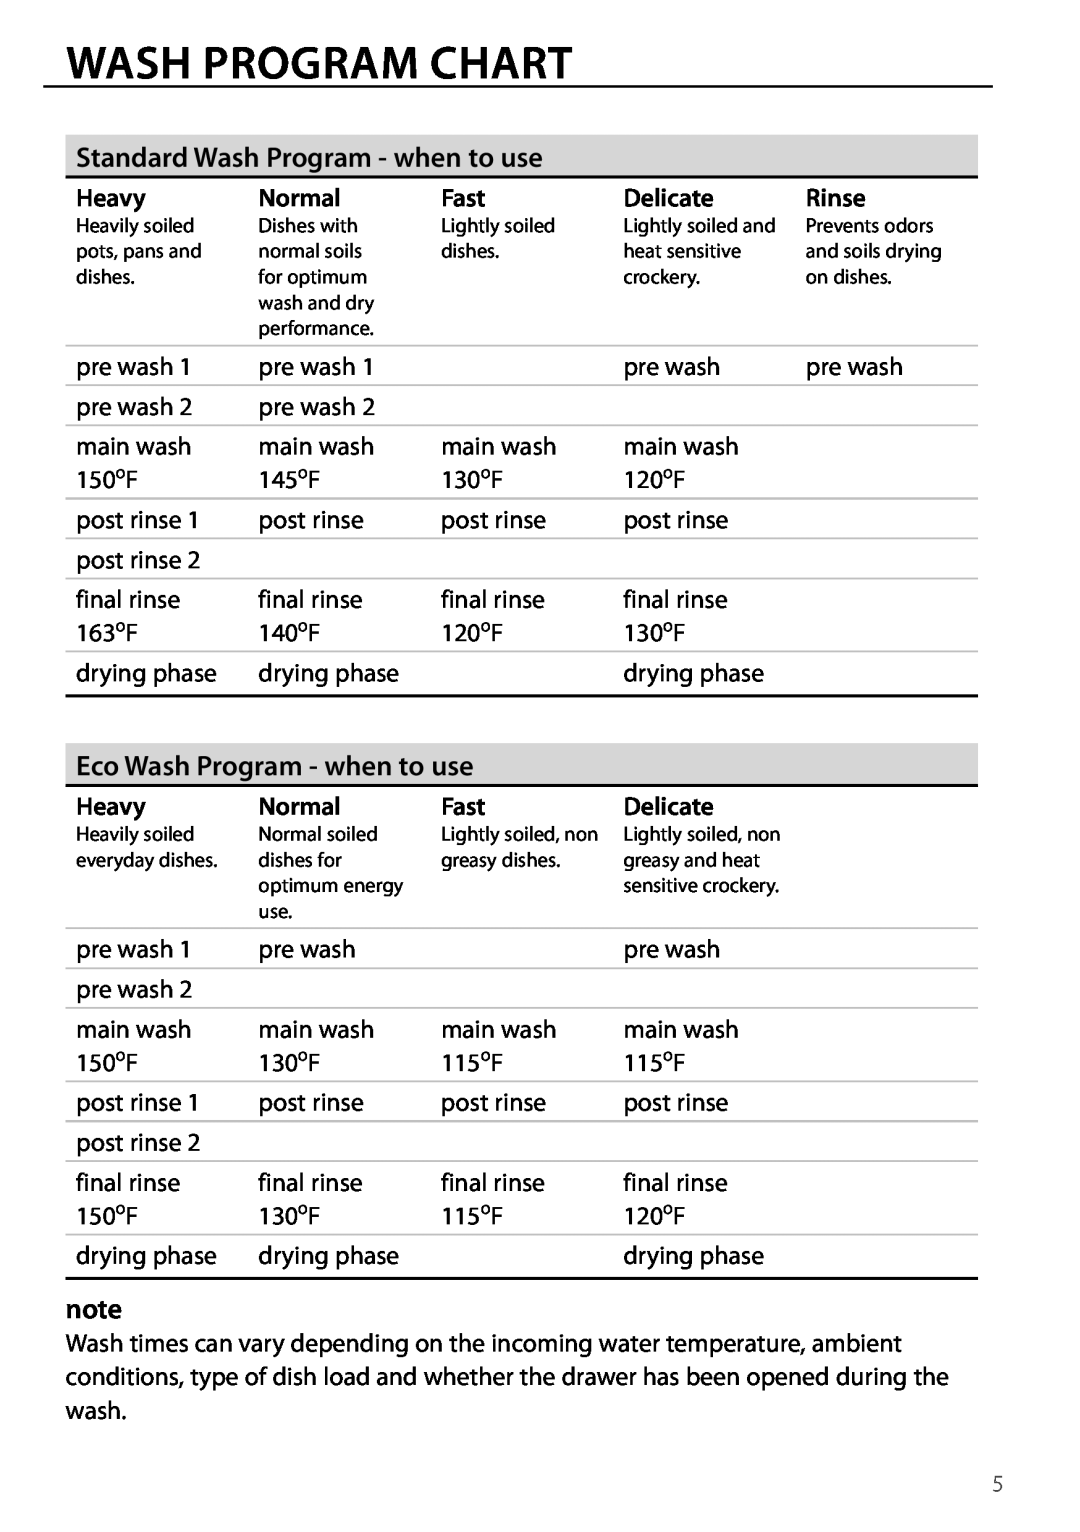 DCS DD124, DD224 manual Wash Program Chart, Standard Wash Program - when to use, Eco Wash Program - when to use 